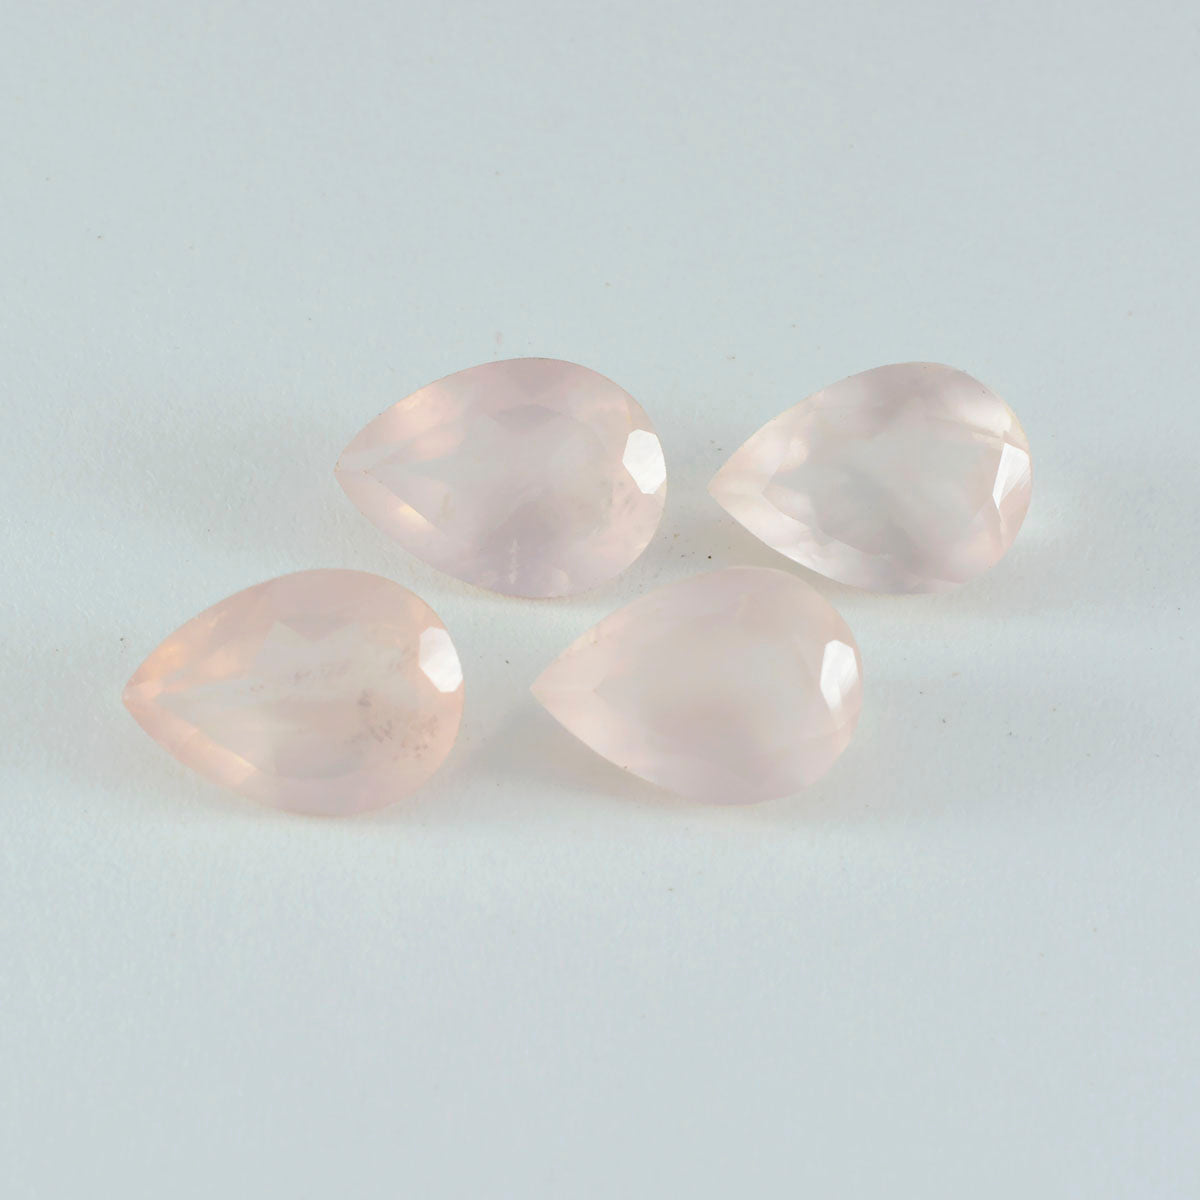 riyogems 1 pieza de cuarzo rosa facetado de 12x16 mm con forma de pera, una piedra preciosa suelta de calidad